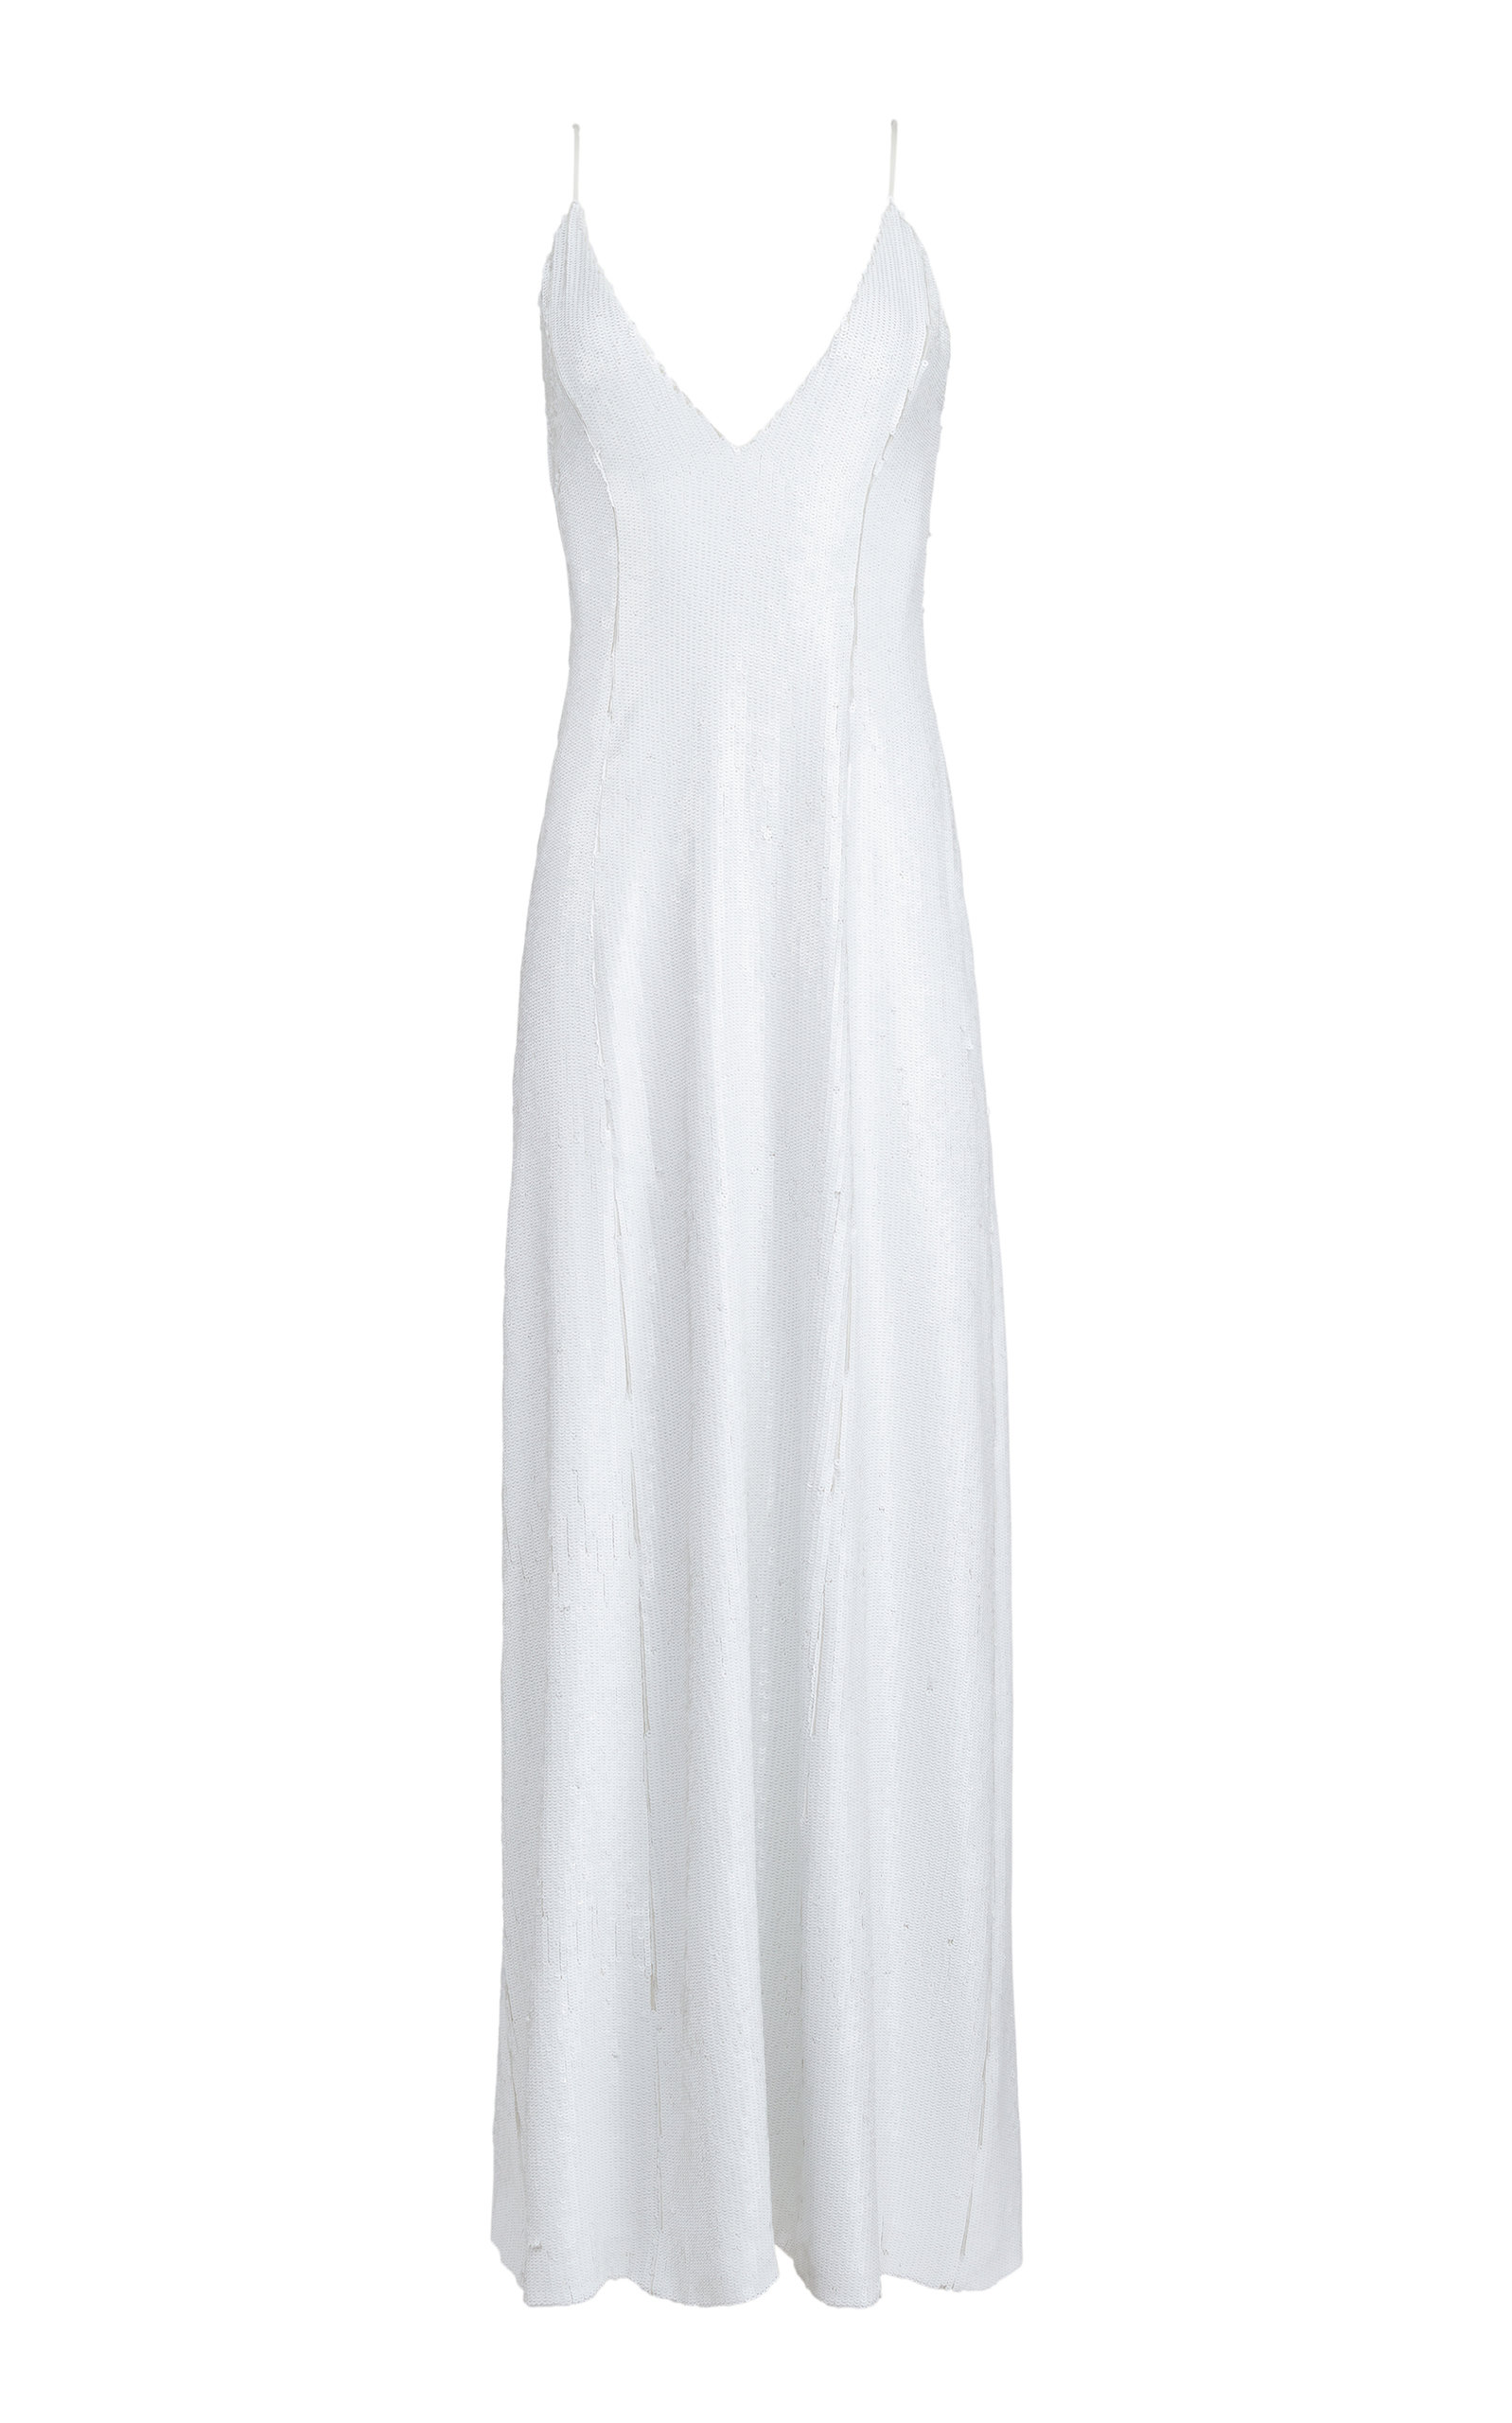 Khaite - Women's Carina Sequin Maxi Dress - White - US 2 - Moda Operandi